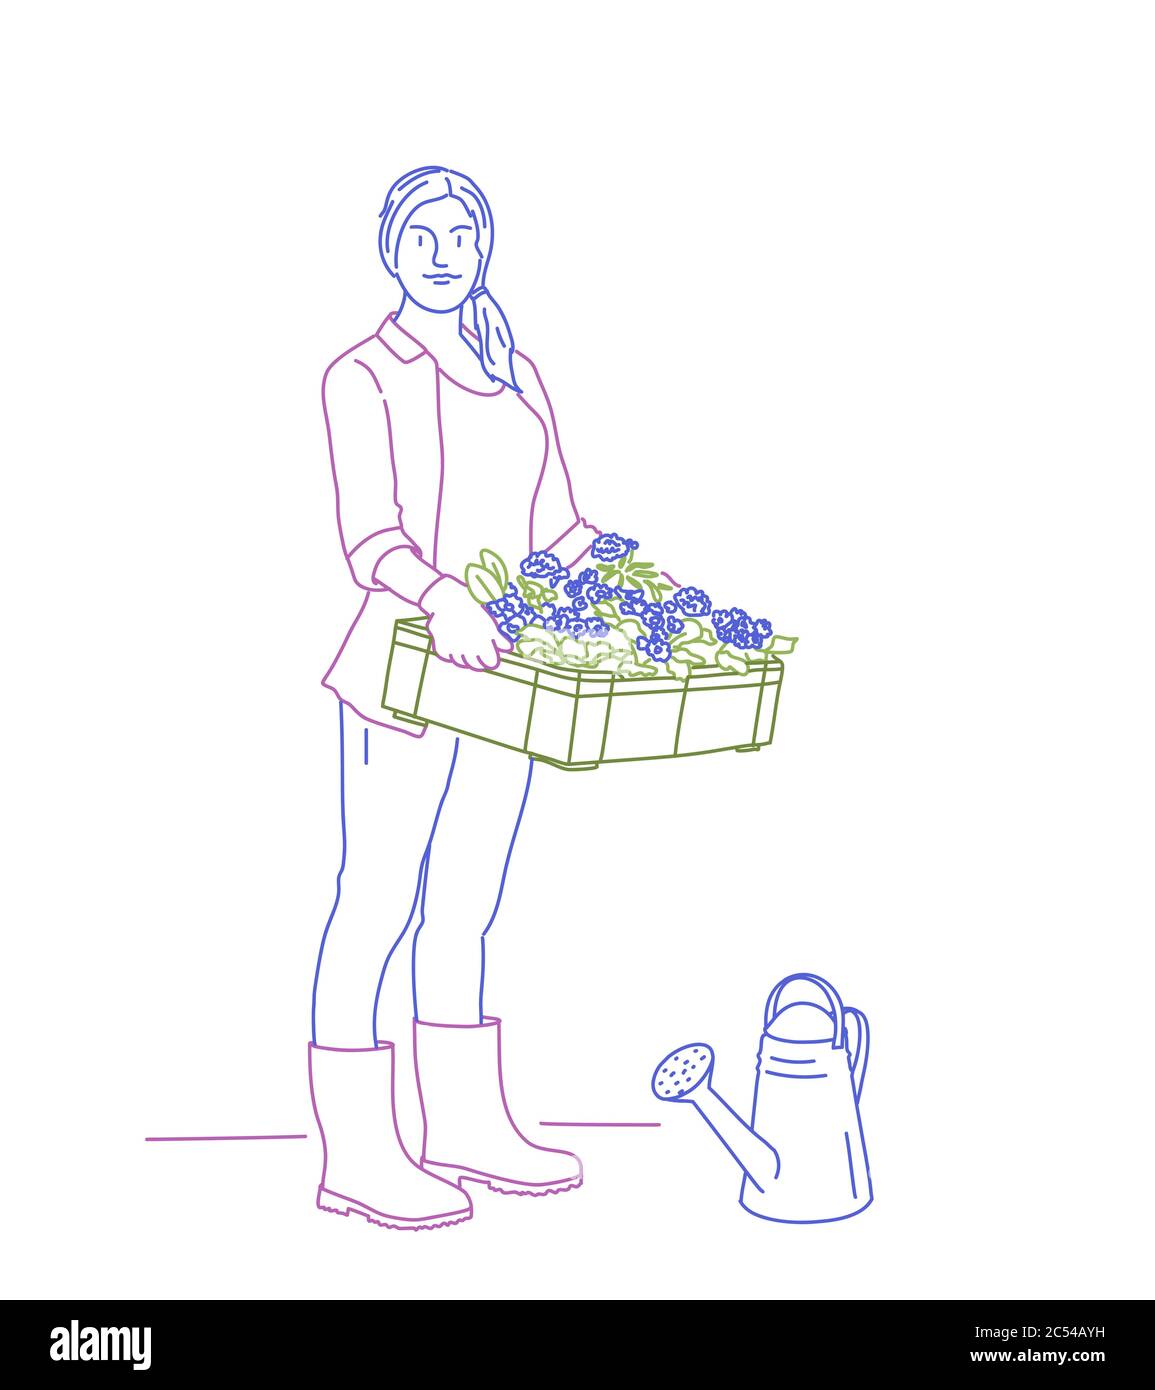 Gärtnerin mit einer Schachtel Blumen und Gießkanne. Vektordarstellung für die farbige Linienzeichnung. Stock Vektor